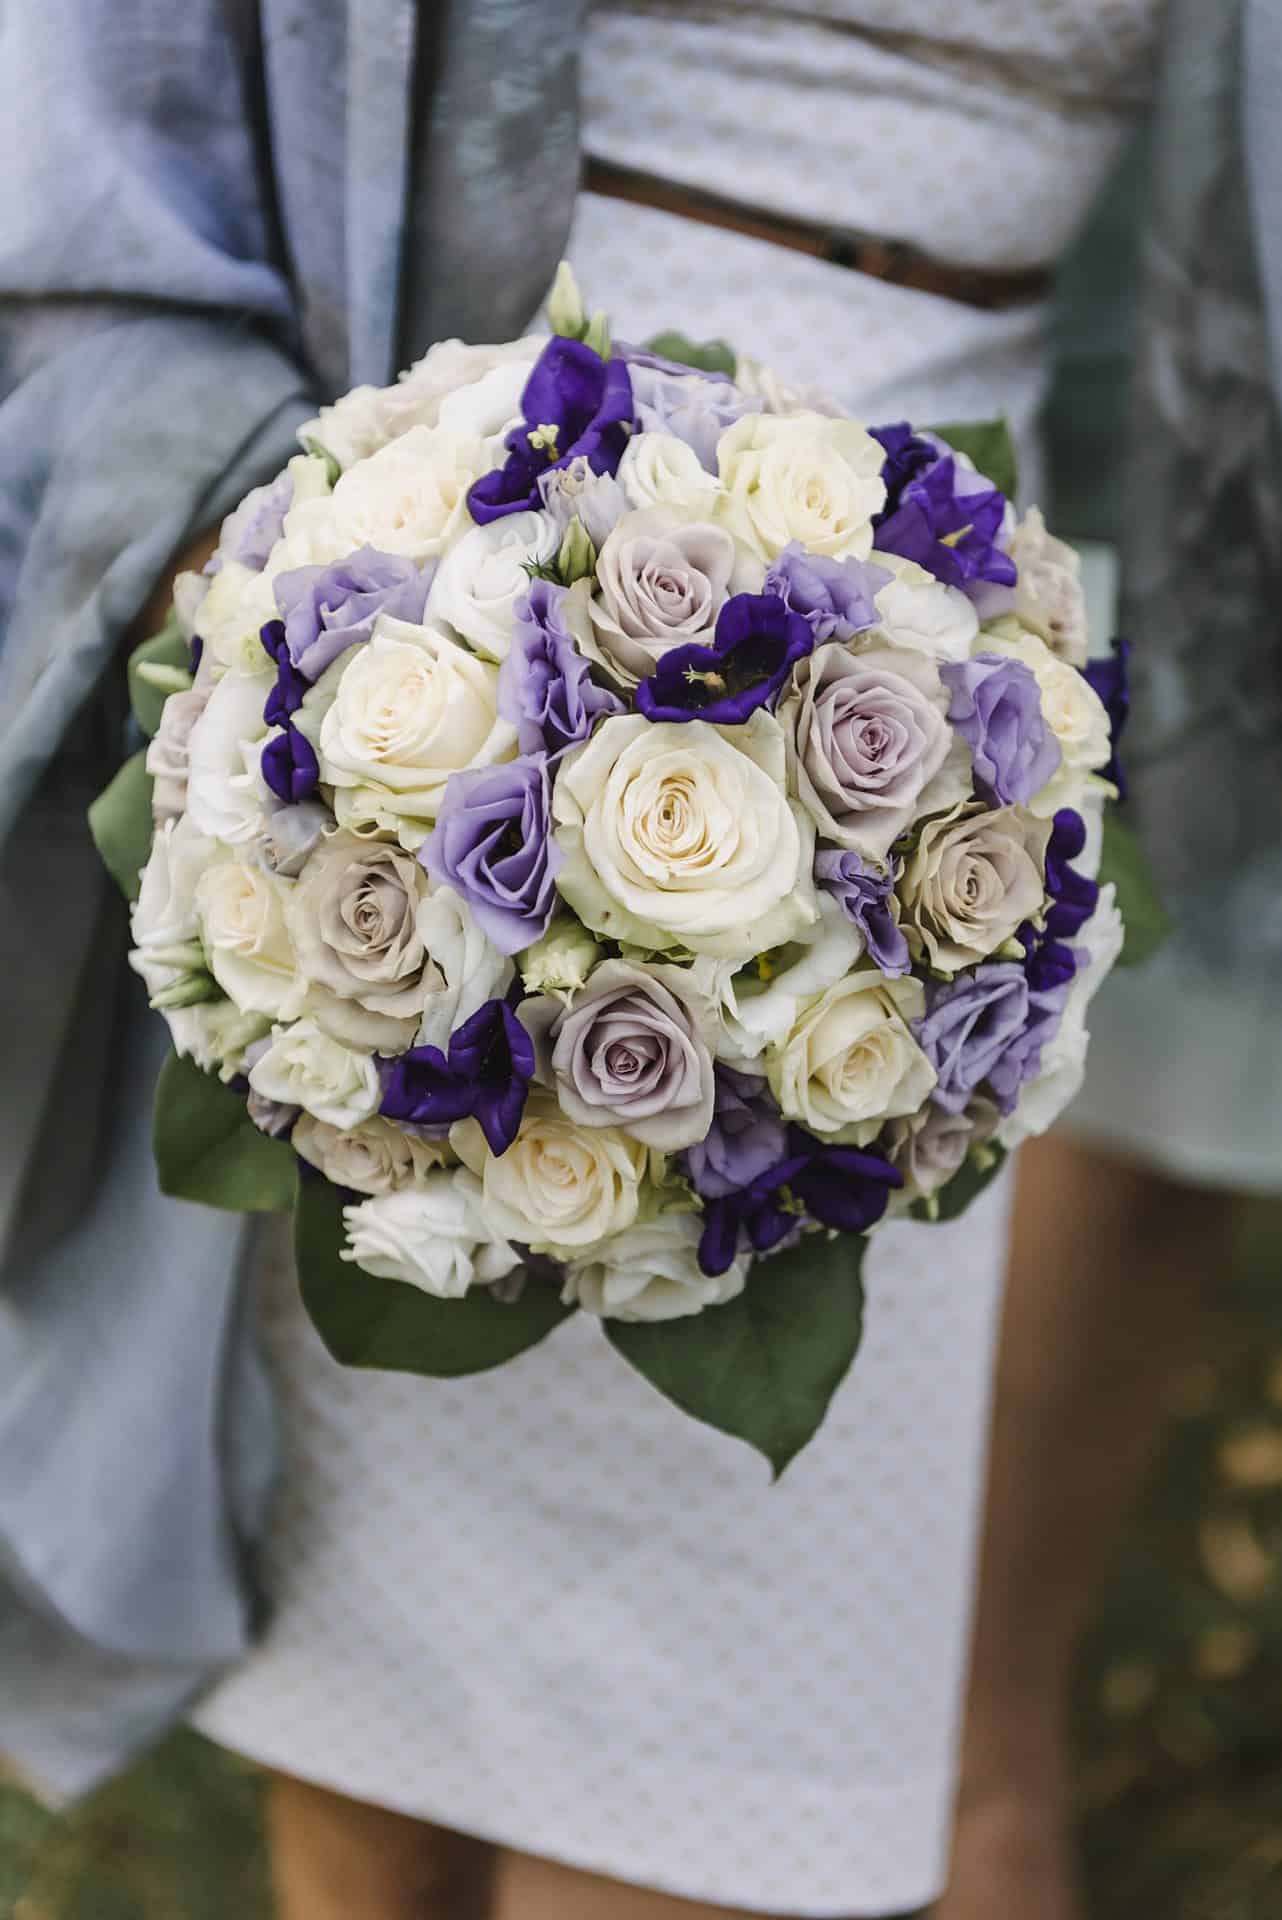 Eine Braut hält einen Strauß lila und weißer Rosen.